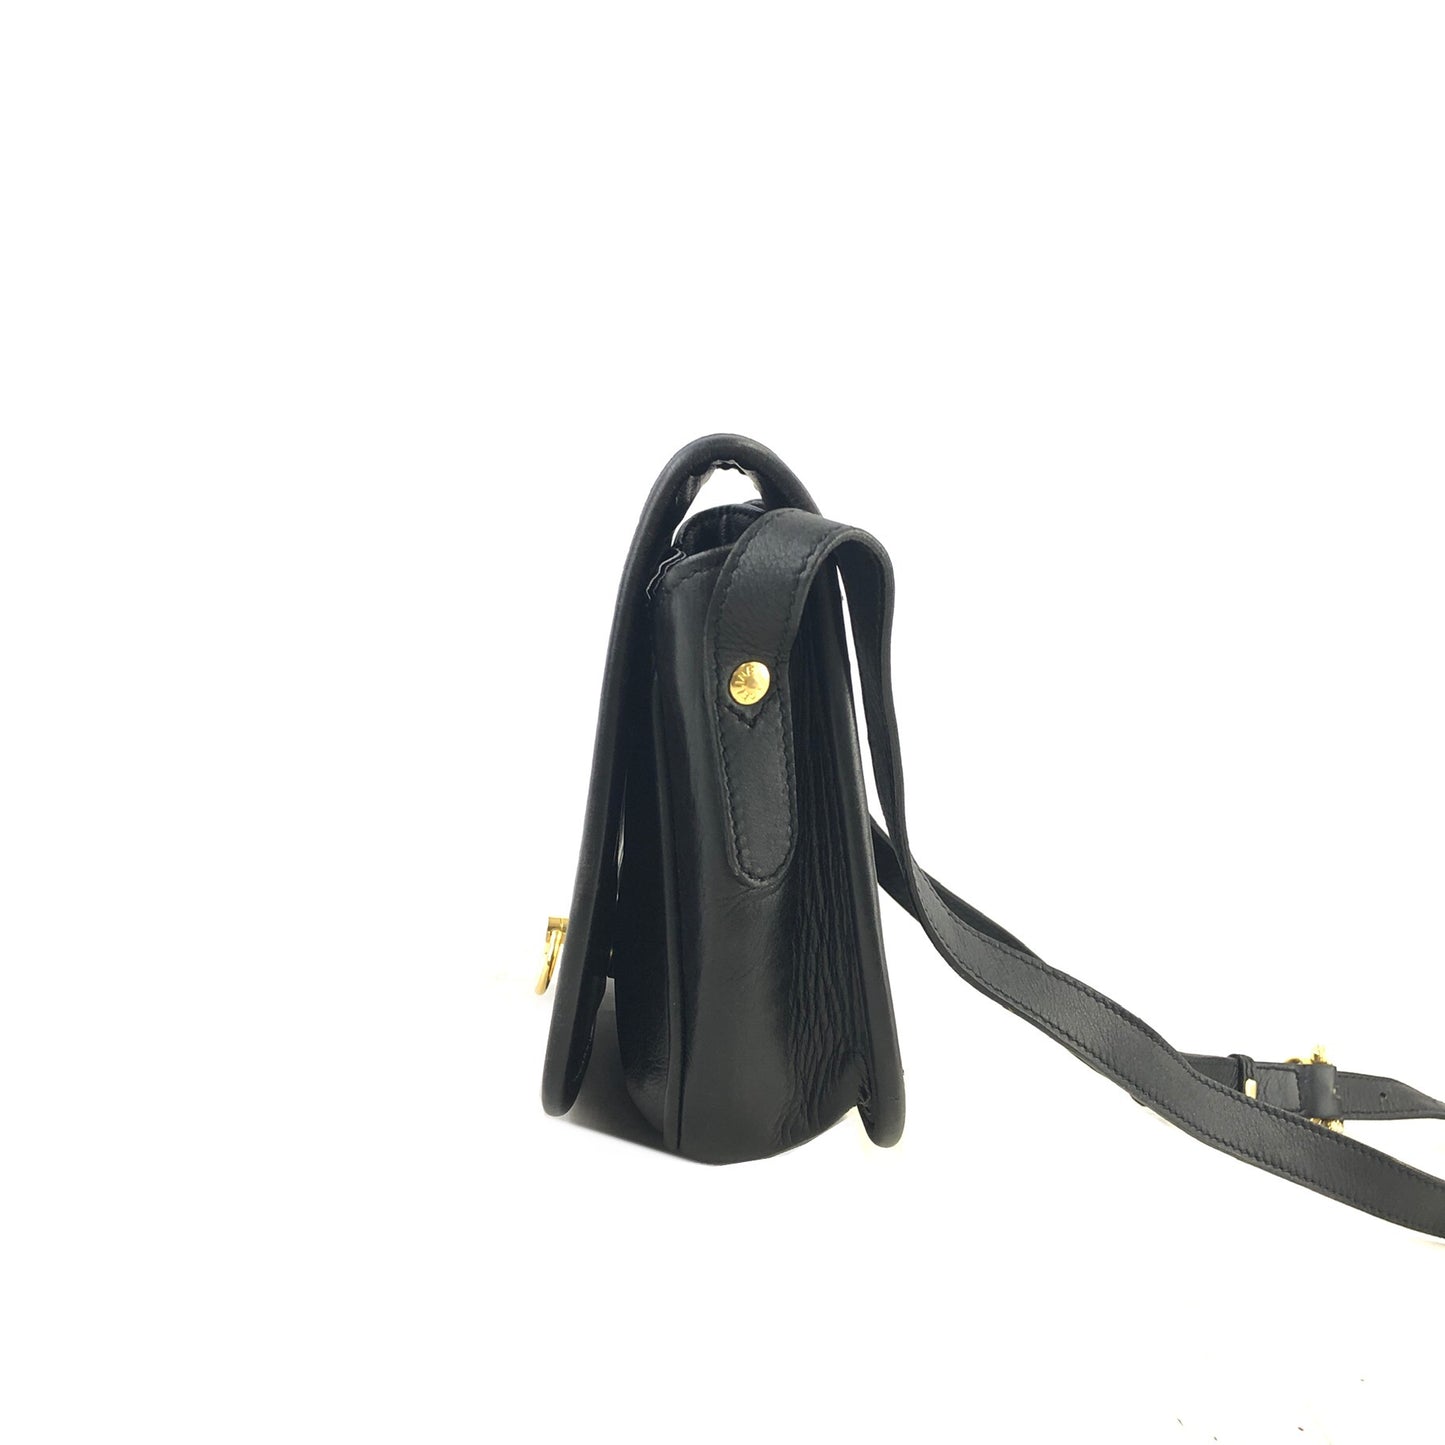 CELINE Gancini Flap Leather Shoulder bag Black Vintage 8na8ex